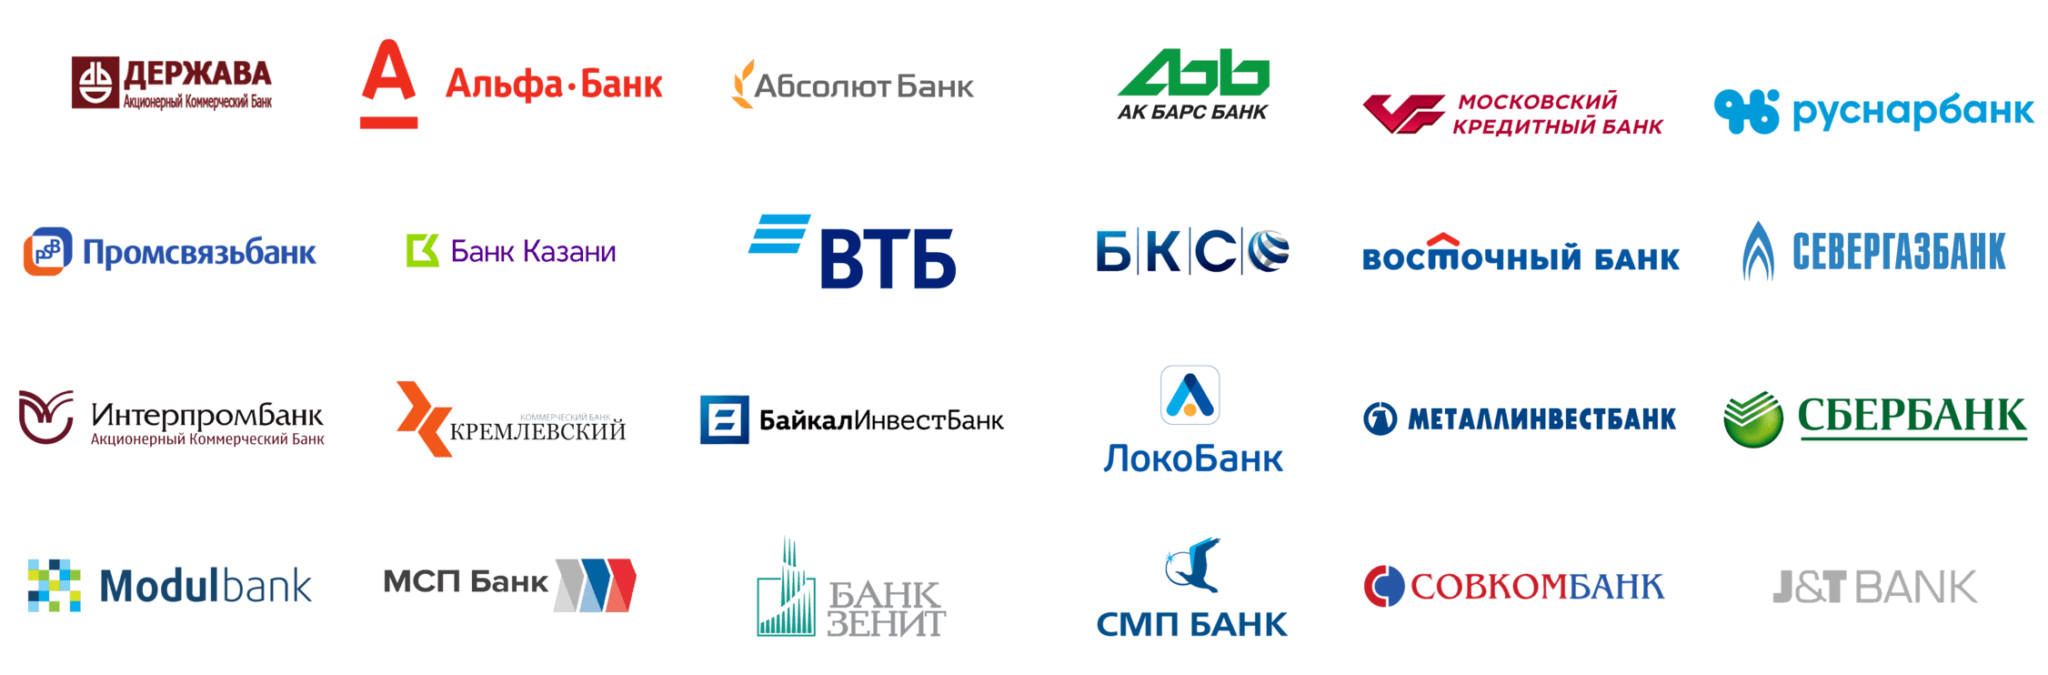 Альфа банк партнеры банка без комиссии пополнение. Банки партнеры. Логотипы банков. Партнёры ВТБ банка. Банки партнеры список.